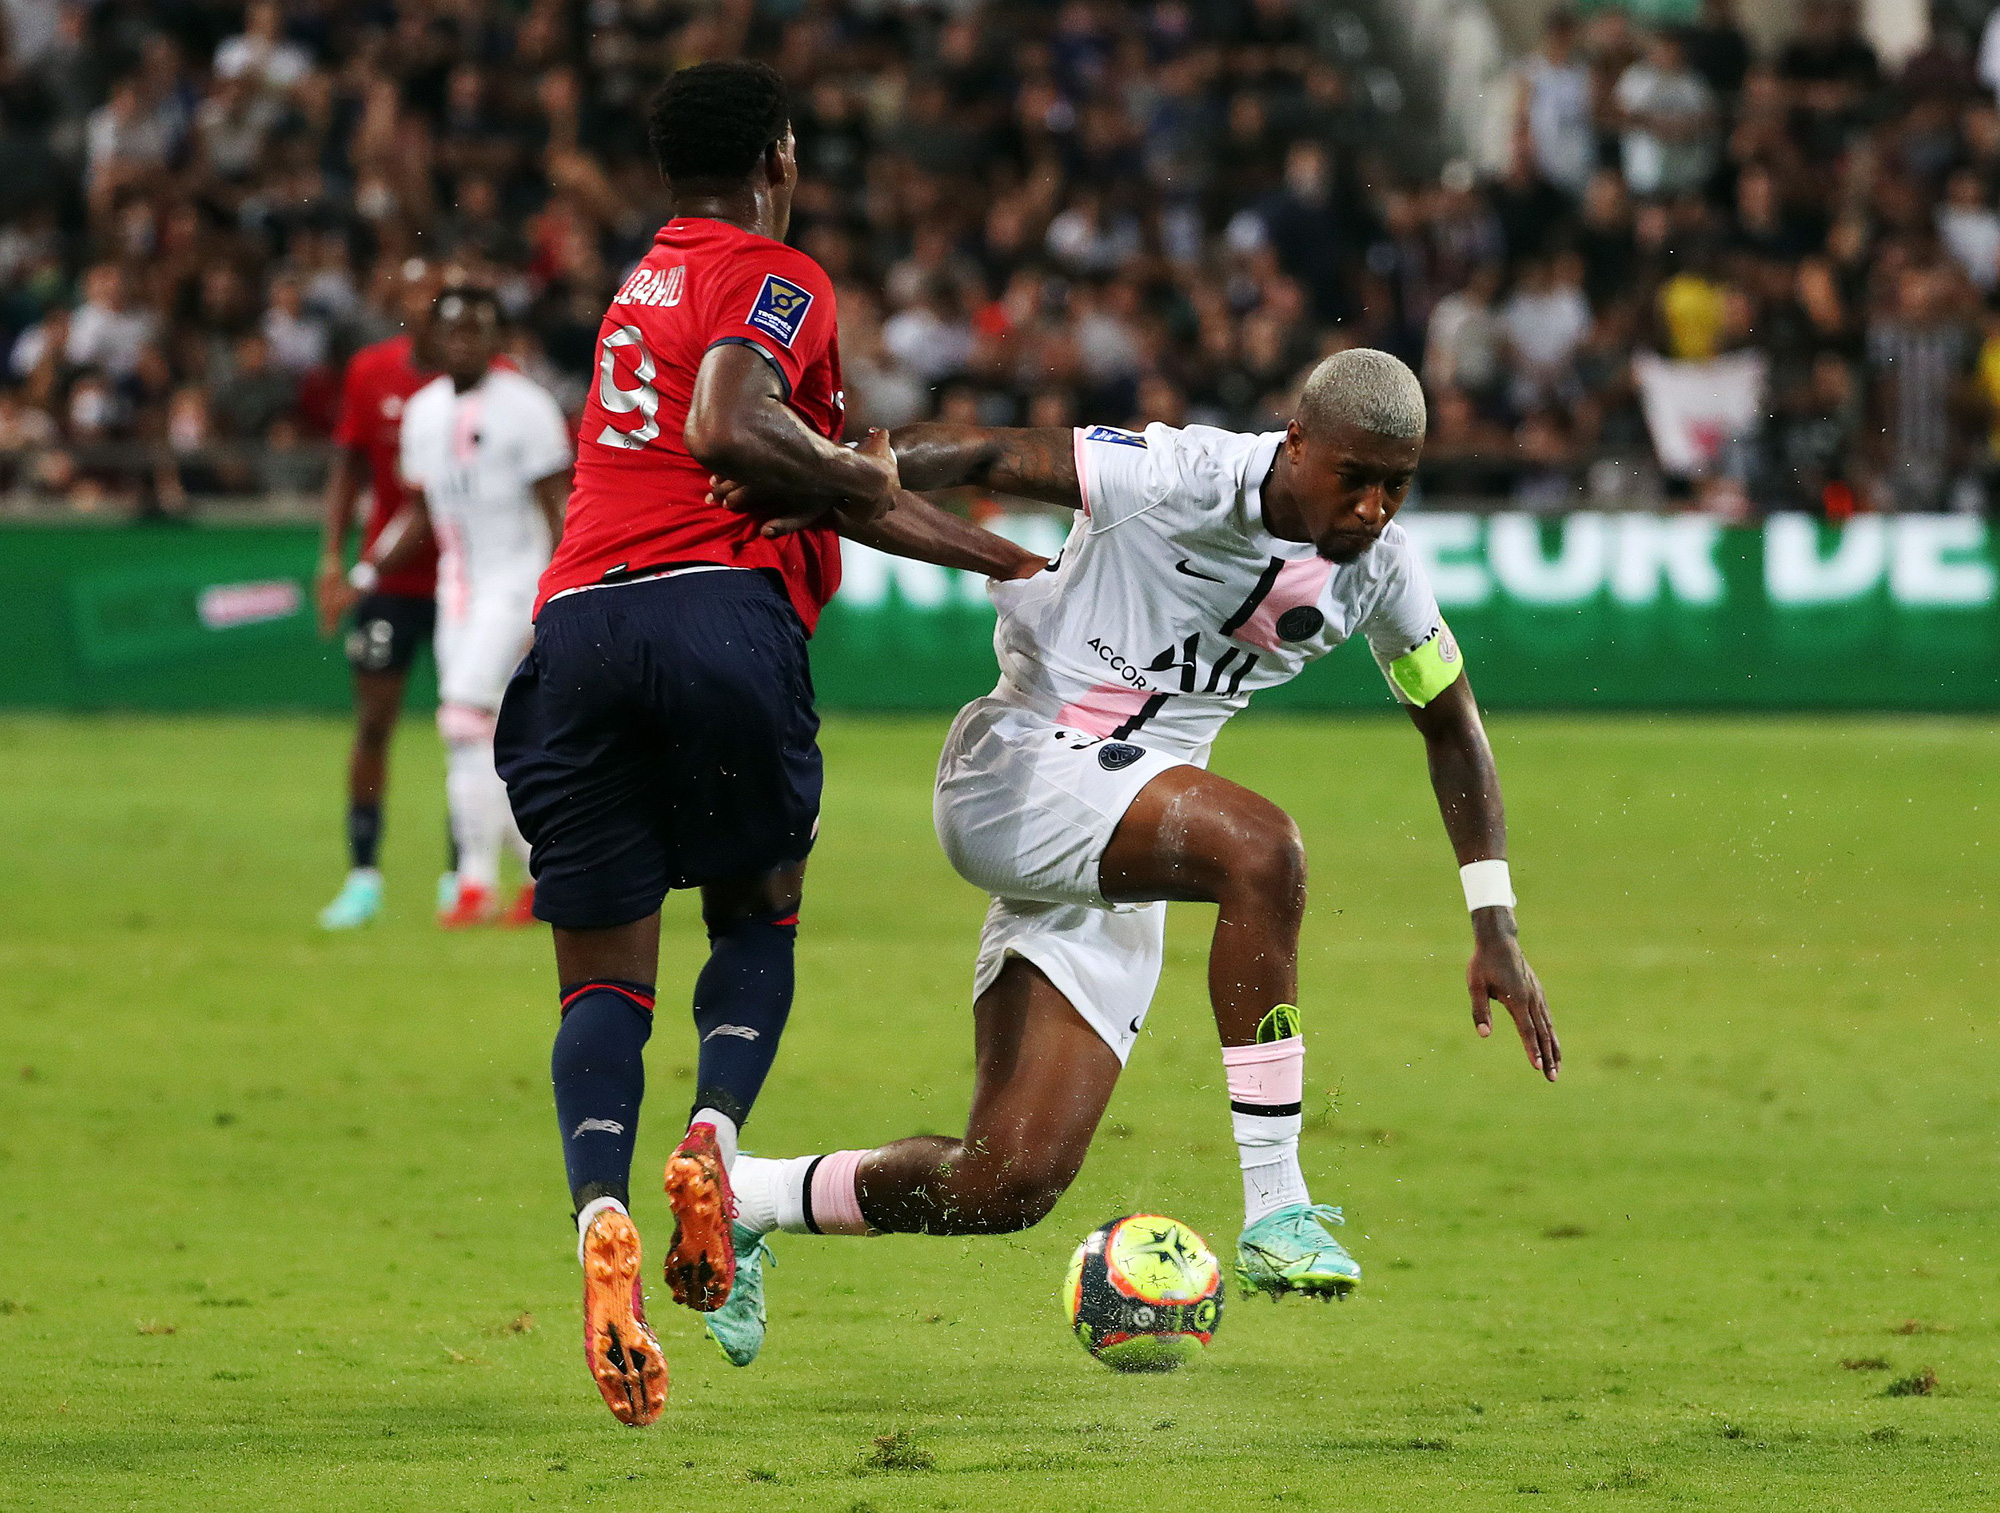 Vắng Neymar và Mbappe, PSG thất bại ở Siêu cúp Pháp - Ảnh 5.